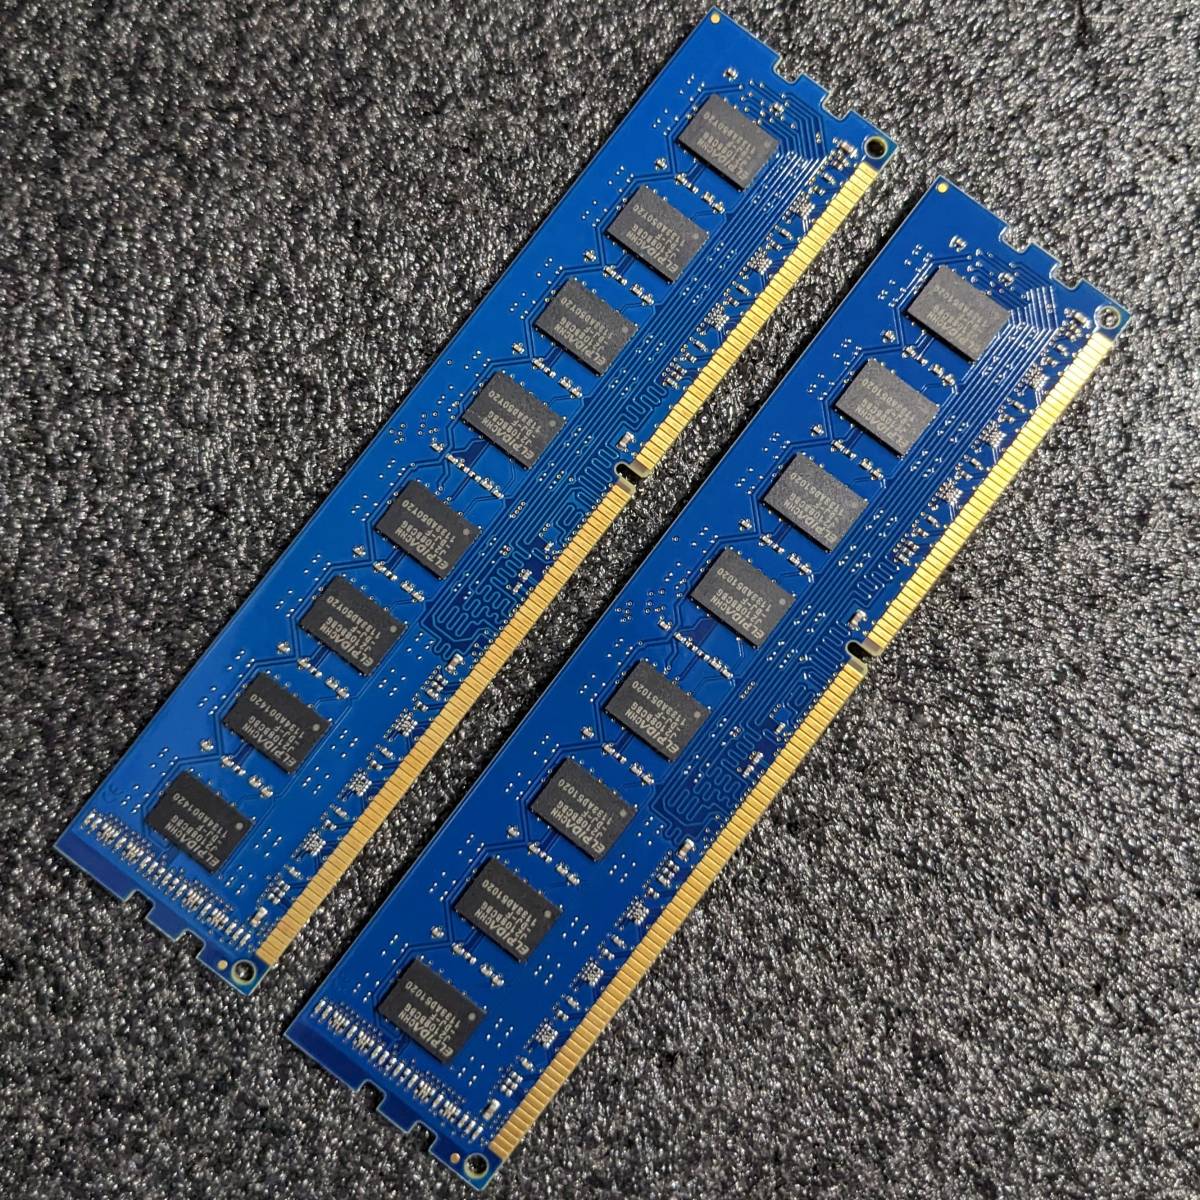 【中古】DDR3メモリ 8GB(4GB2枚組) Kingston RBU1333D3U9D8G/4G [DDR3-1333 PC3-10600]